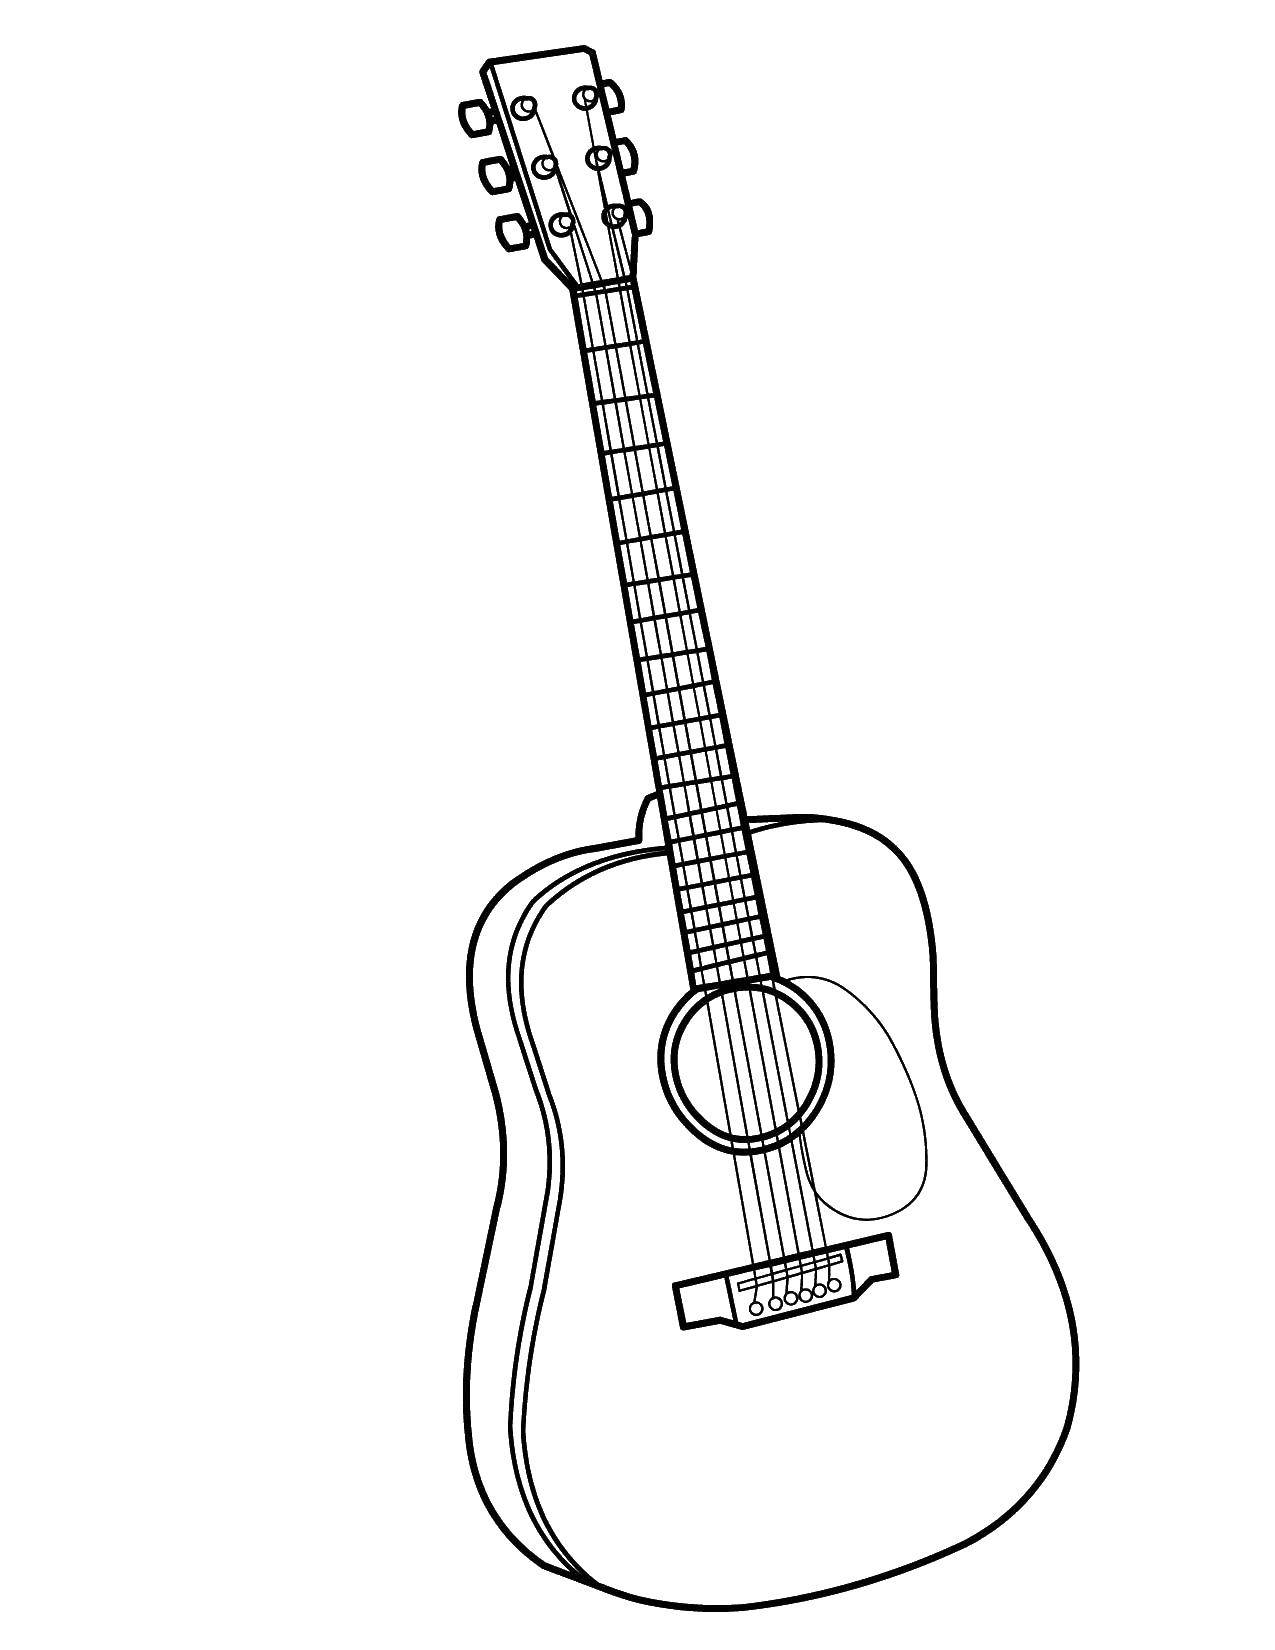 Название: Раскраска Простая гитара.. Категория: Музыкальный инструмент. Теги: Музыка, инструмент, музыкант, ноты.